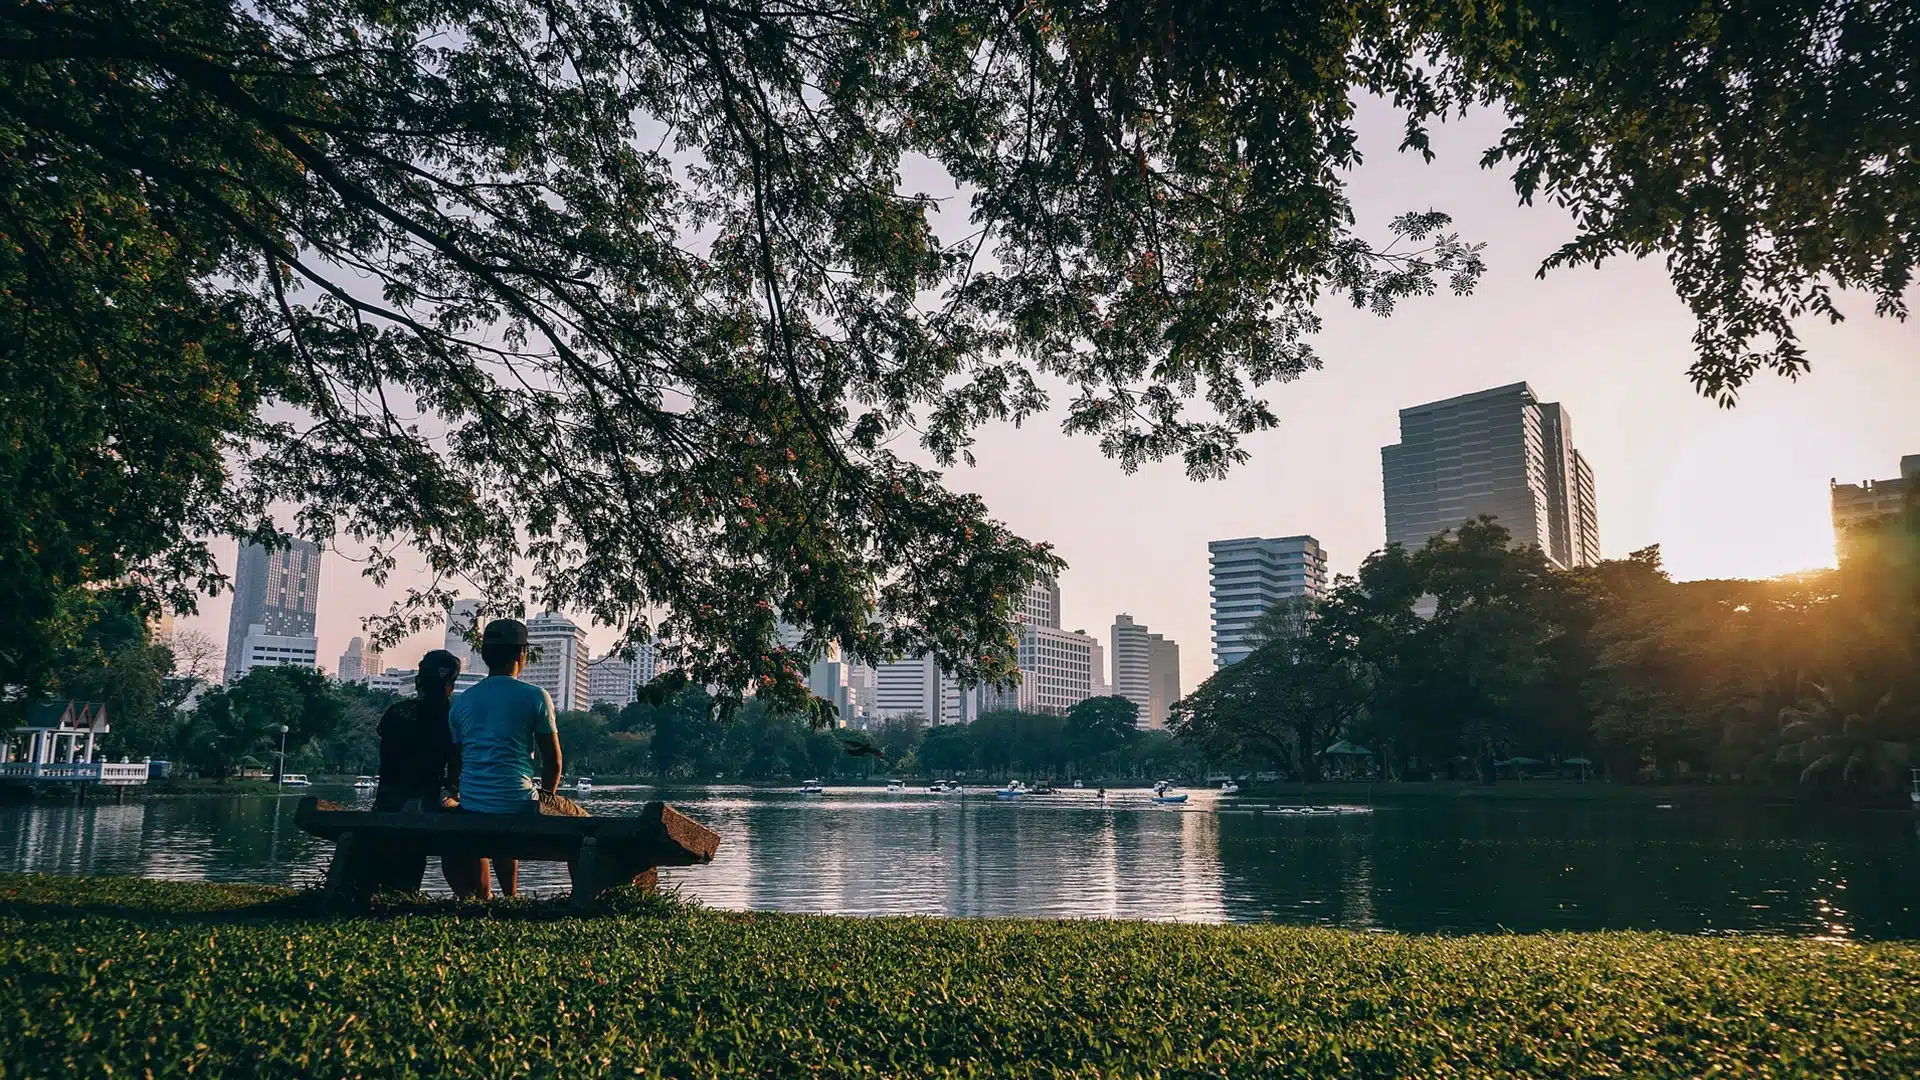 Δύο άνθρωποι που κάθονται σε ένα παγκάκι μπορστά σε μία λίμνη σε ένα πάρκο με θέα τους ουρανοξύστες